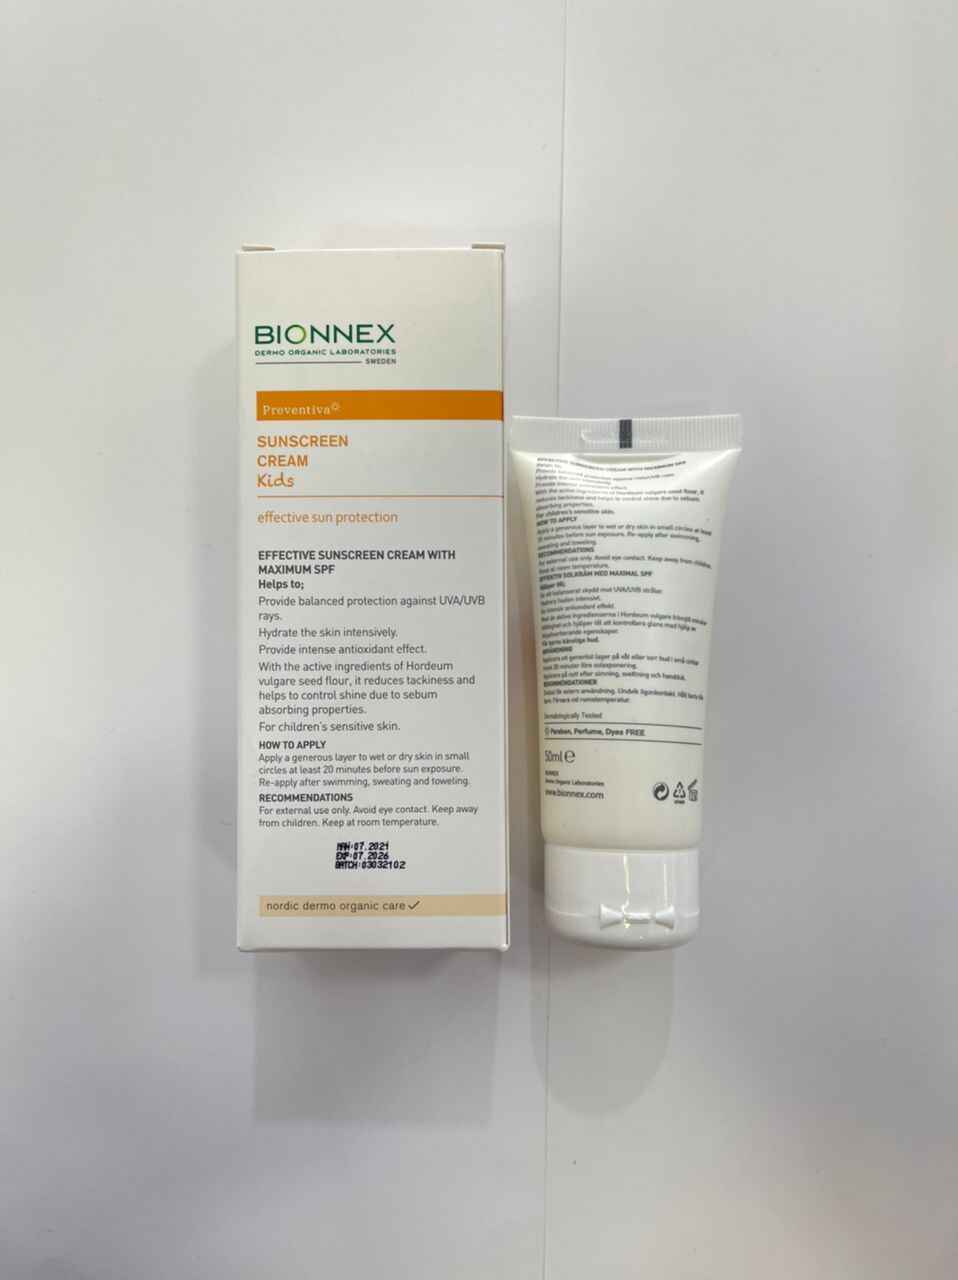 ضد آفتاب بچگانه بایونکس bionnex سری preventina | پوست حساس +SPF 100